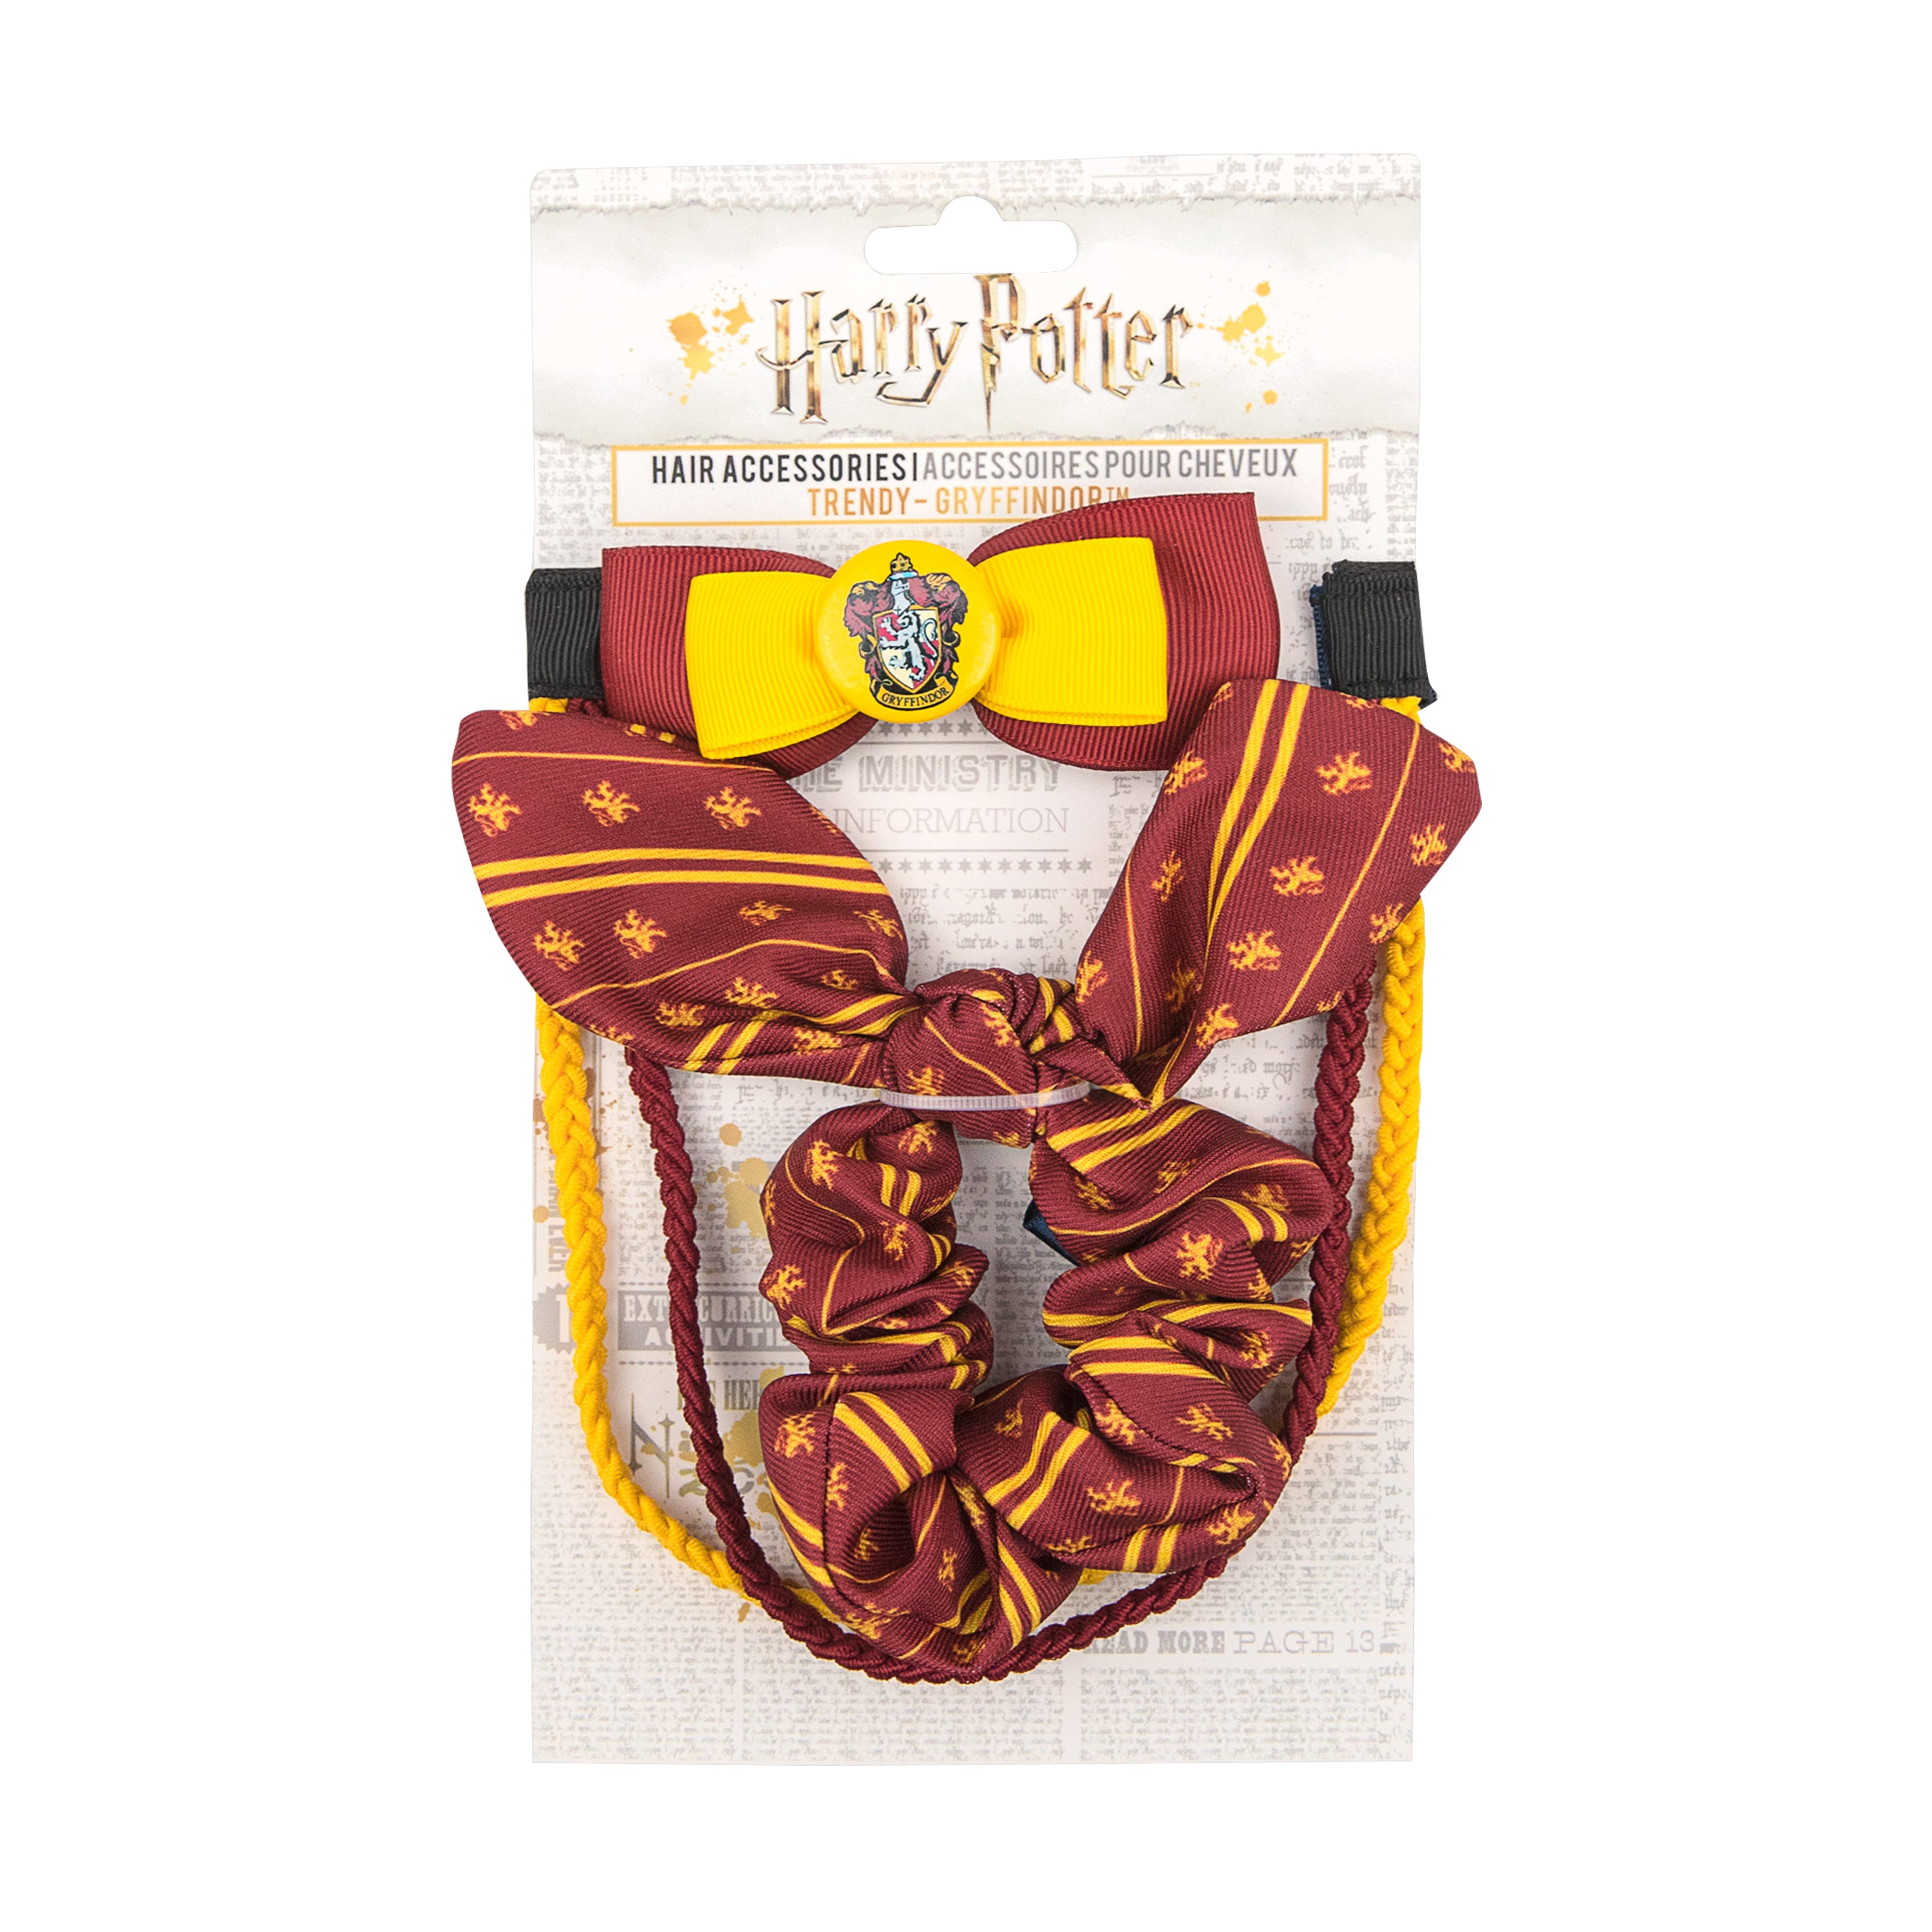 HARRY POTTER - Gryffondor - Set Accessoires pour cheveux : :  Accessoire Cinereplicas Harry Potter